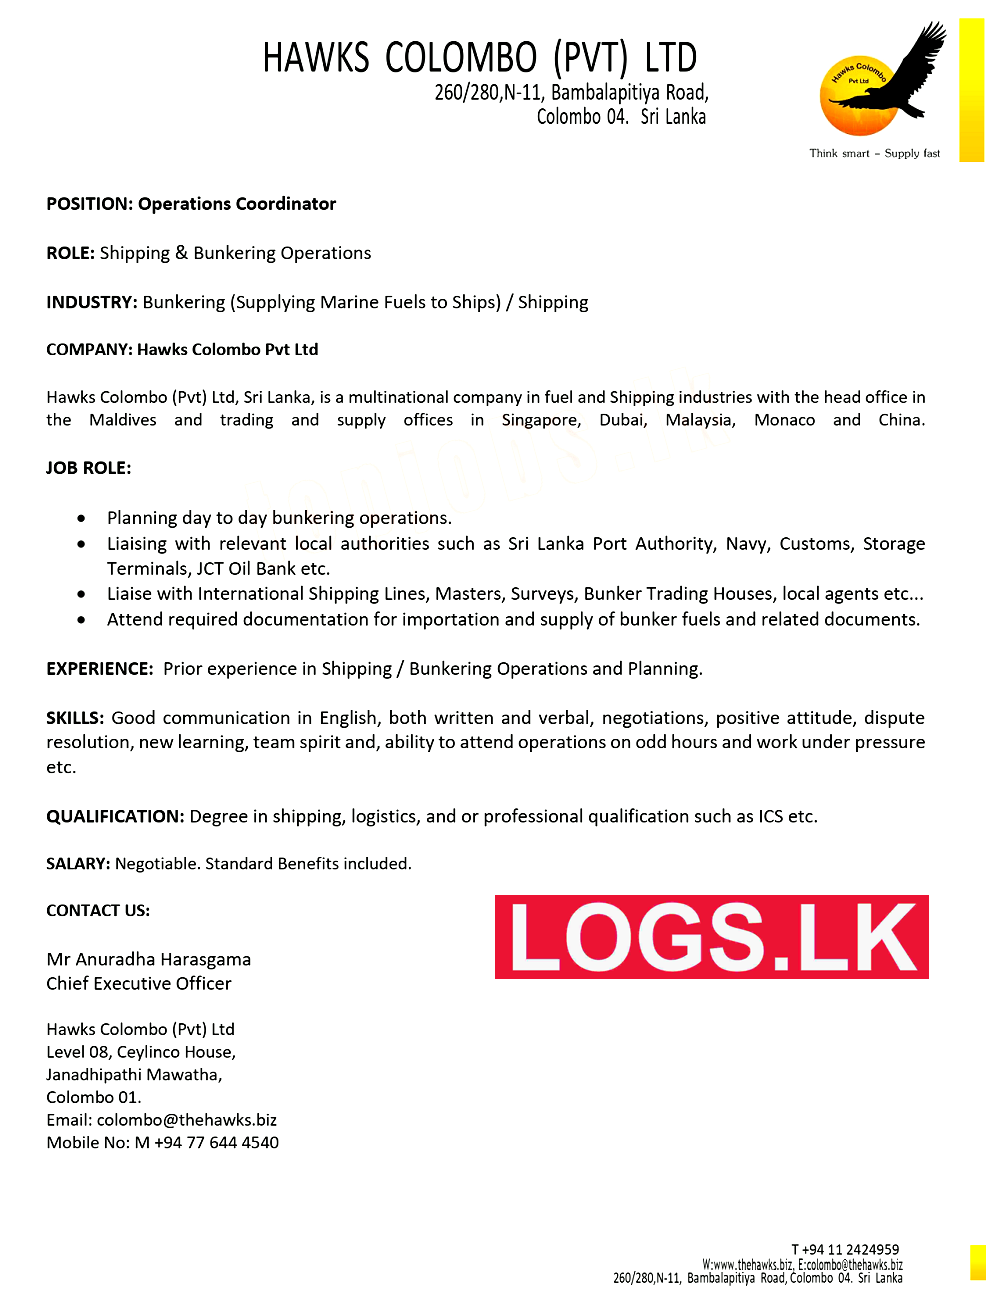 Operations Coordinator Vacancy at Hawks Colombo (Pvt) Ltd Job Vacancies